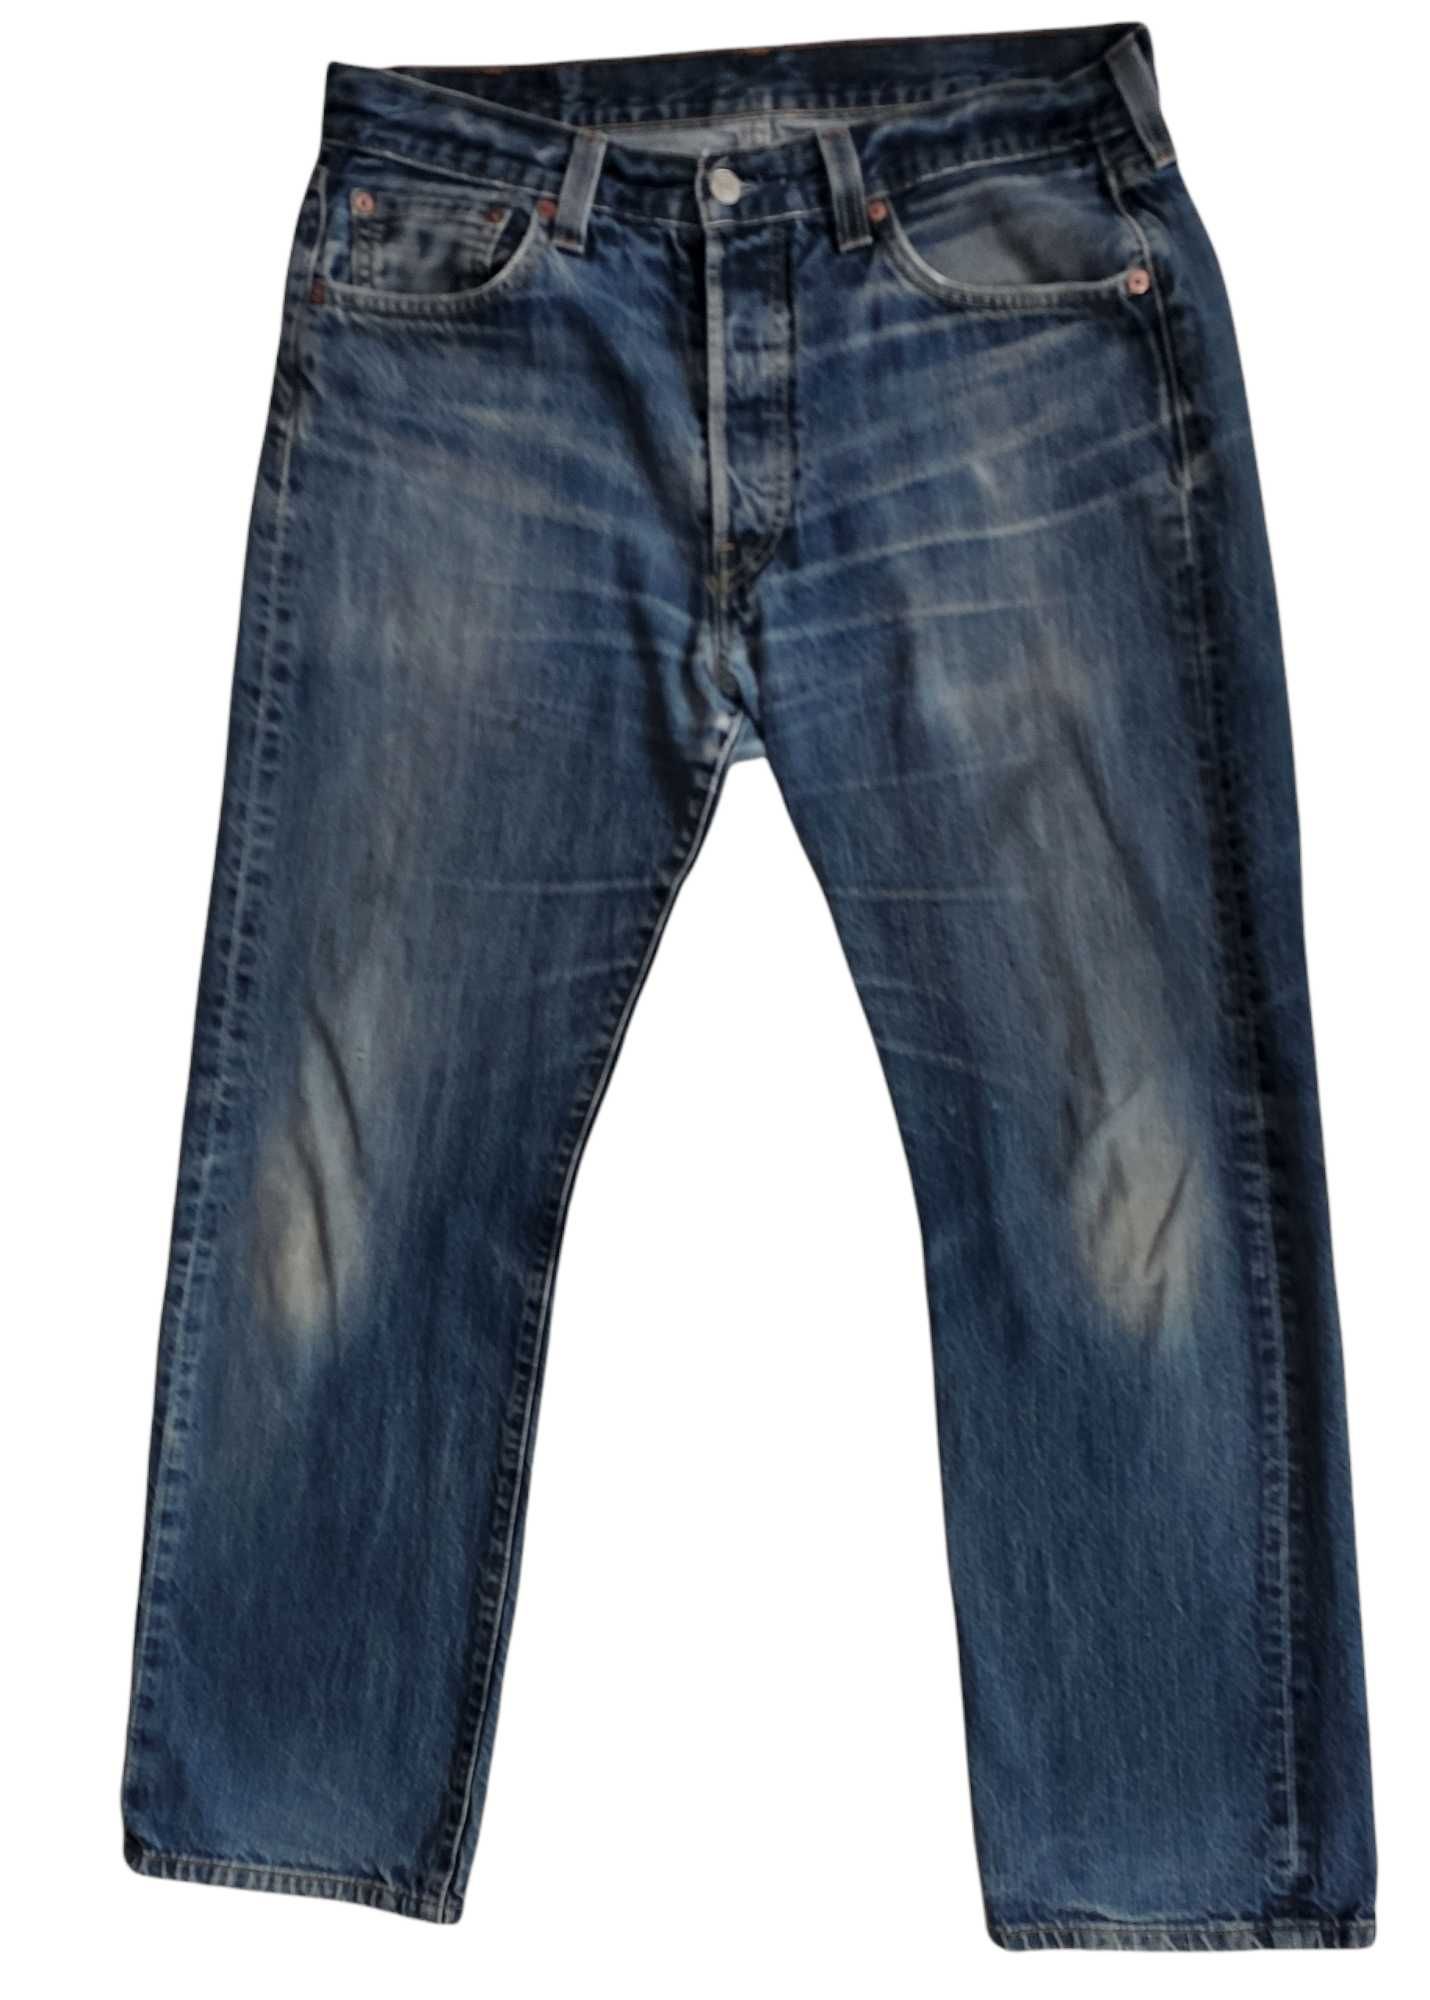 Levi's 501 W34/L30, spodnie jeansowe, stan bardzo dobry